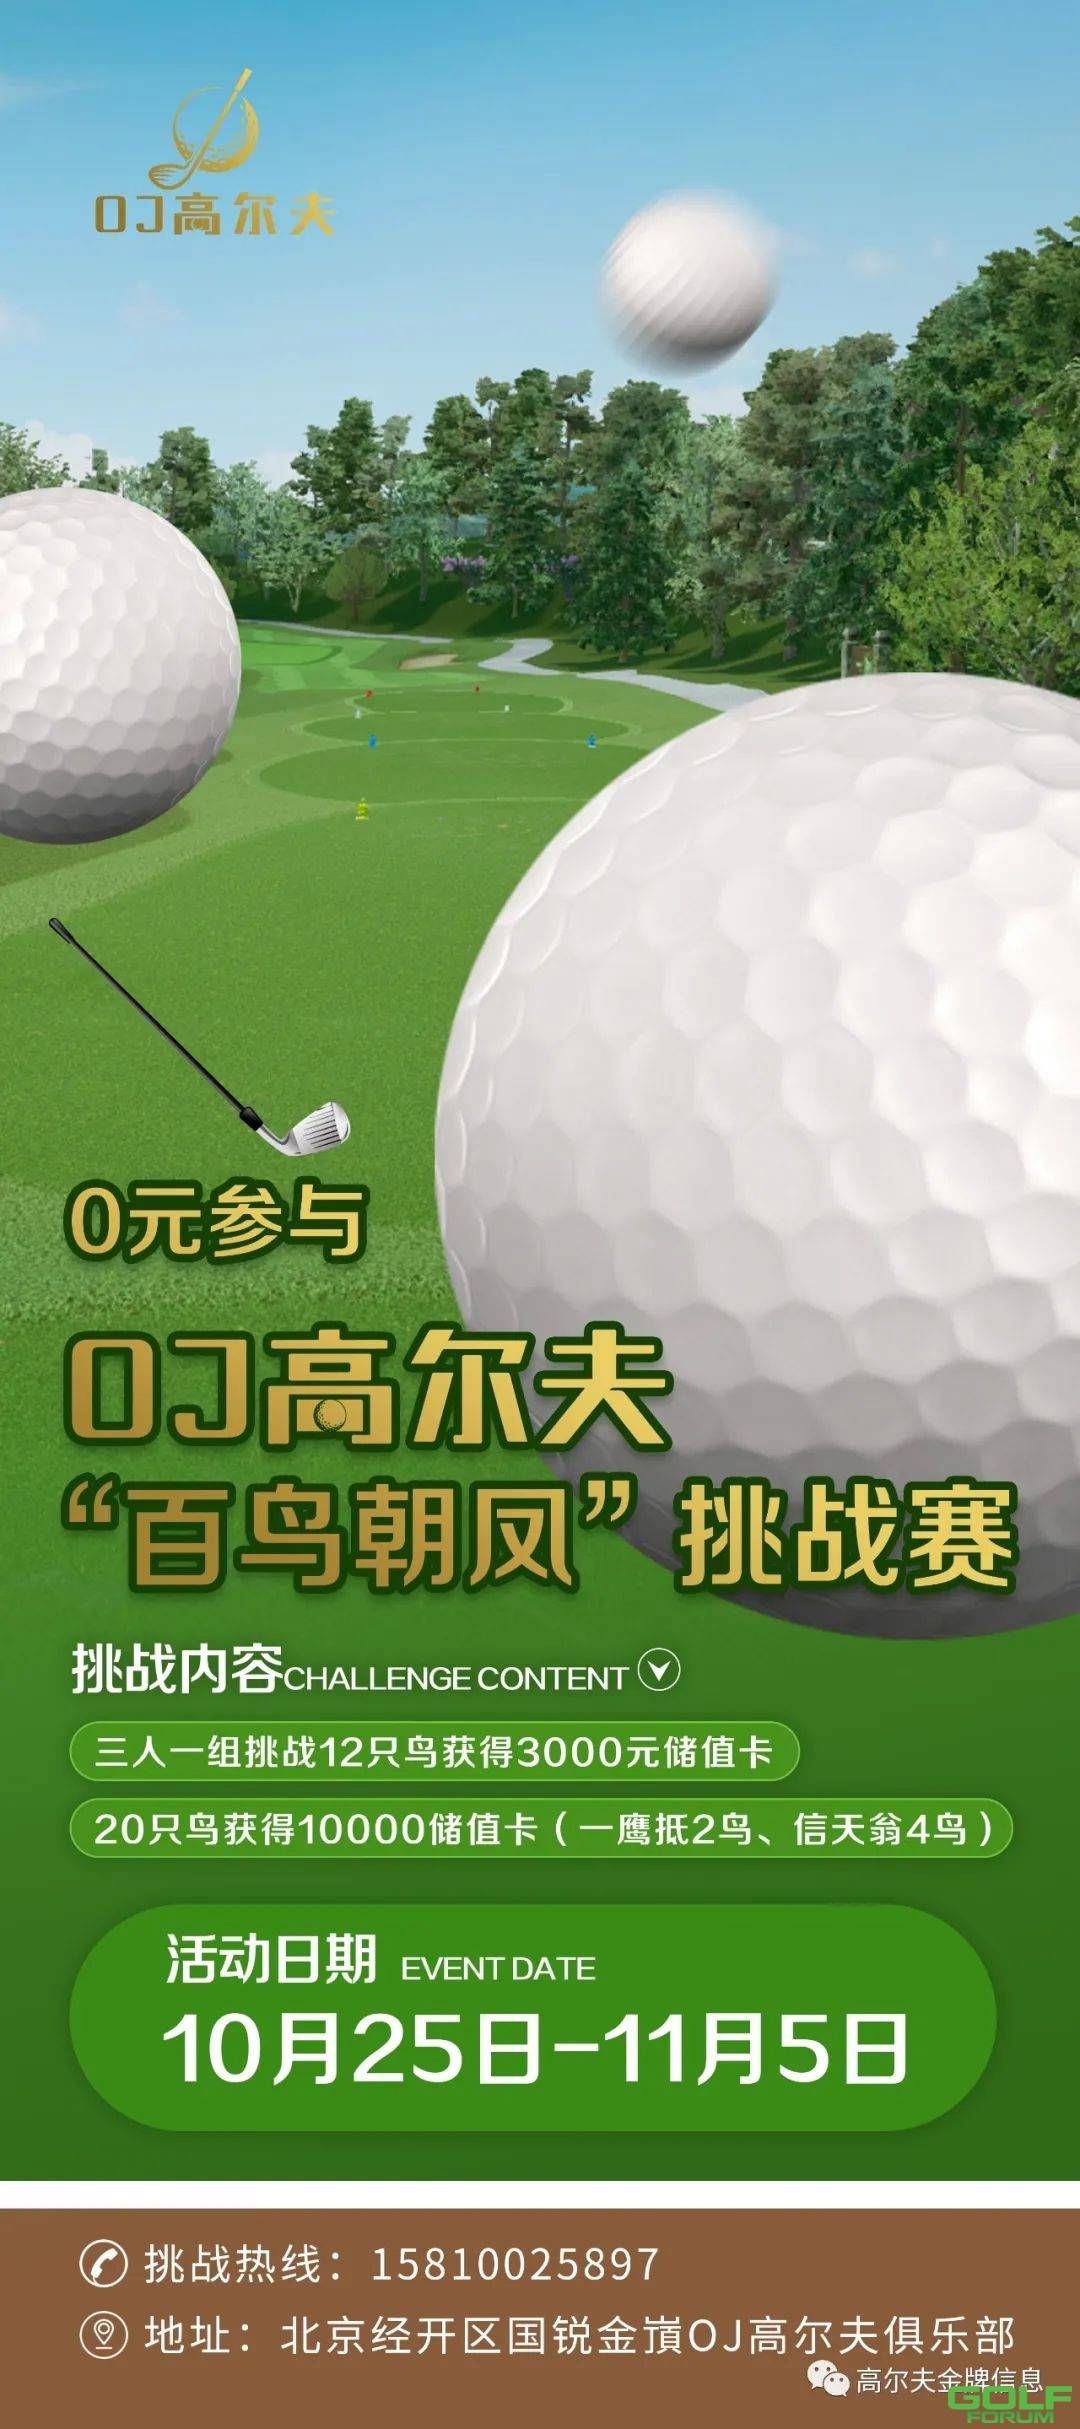 OJ高尔夫“百鸟朝凤”挑战赛